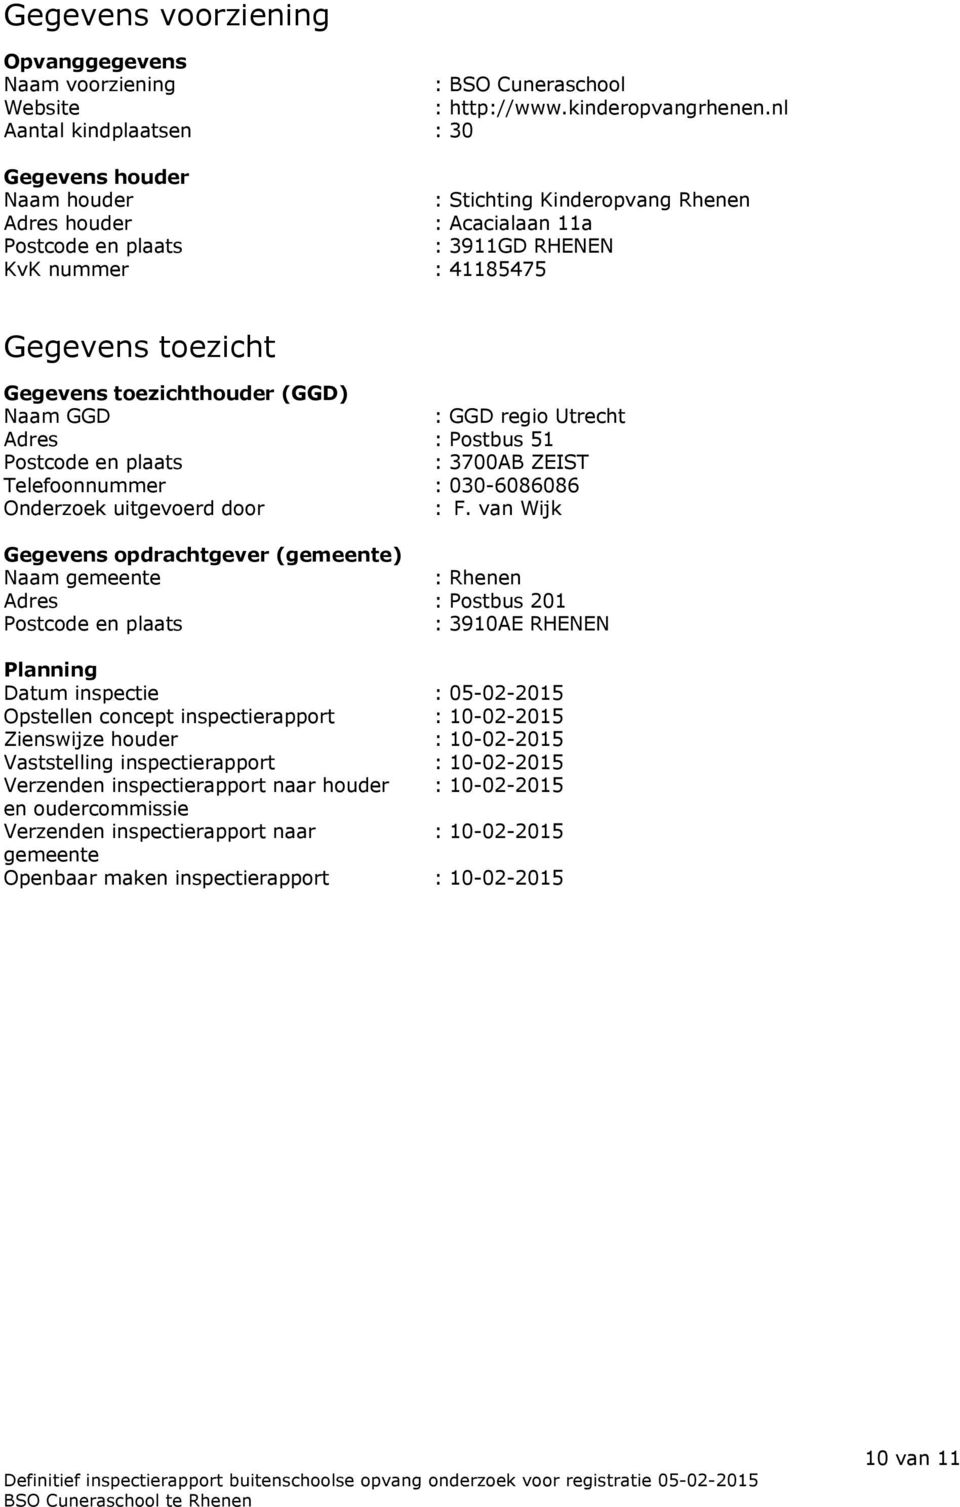 Gegevens toezichthouder (GGD) Naam GGD : GGD regio Utrecht Adres : Postbus 51 Postcode en plaats : 3700AB ZEIST Telefoonnummer : 030-6086086 Onderzoek uitgevoerd door : F.